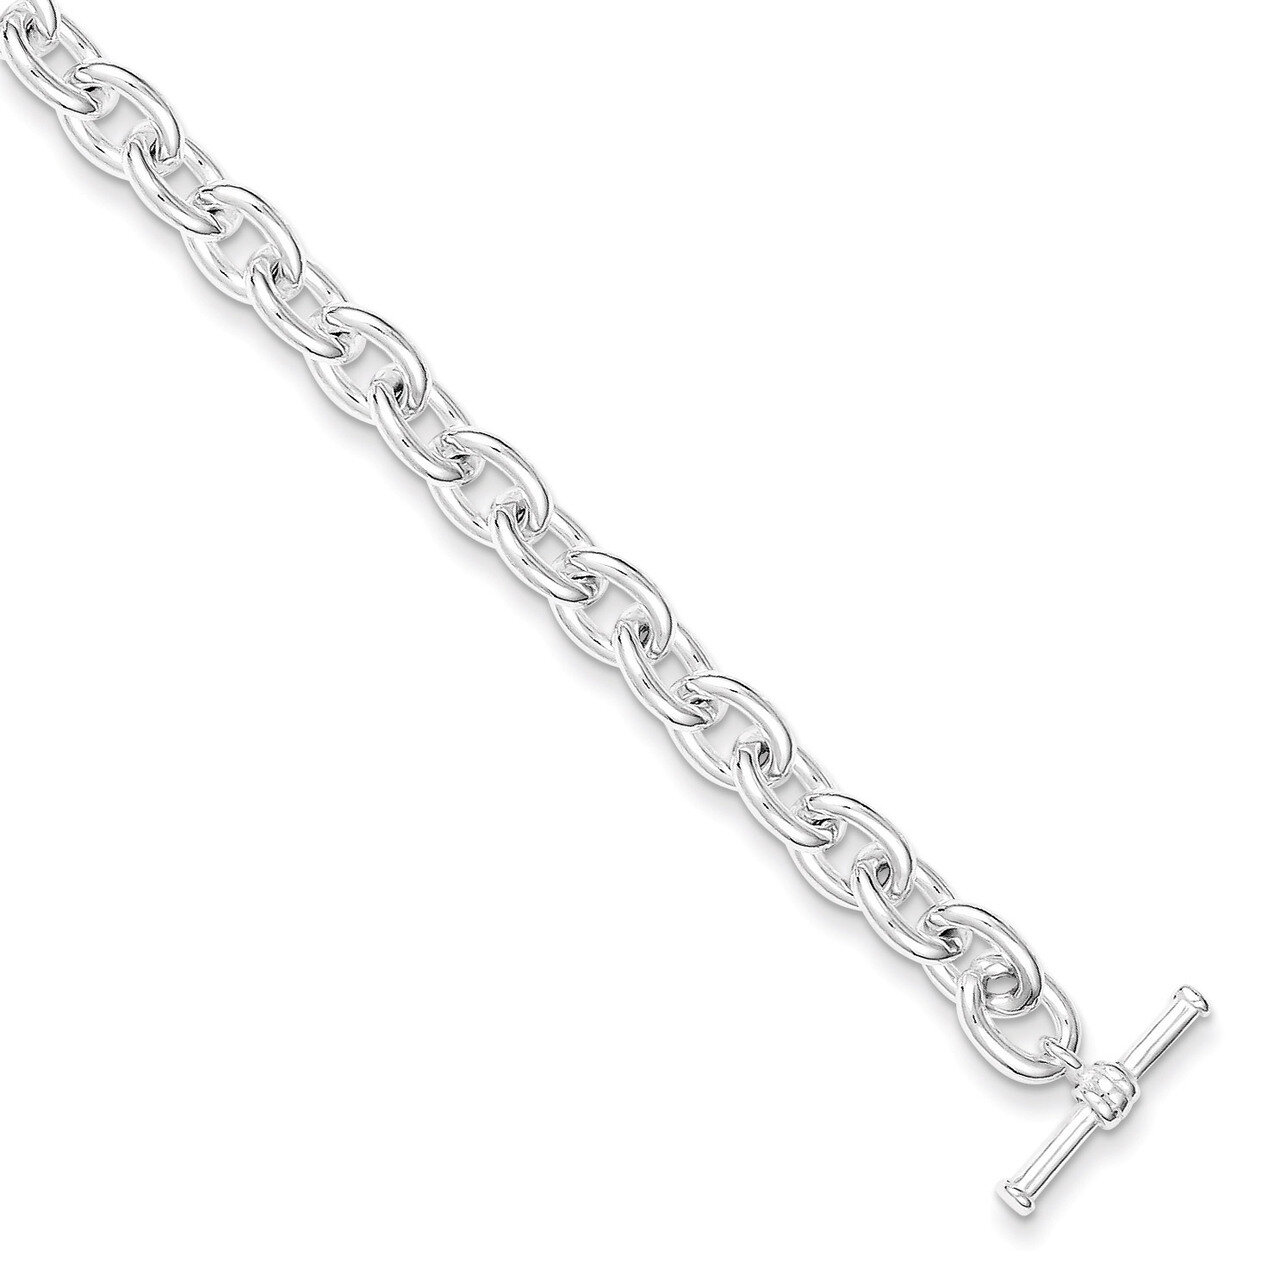 7.5 Inch Toggle Link Bracelet Sterling Silver QG3079-7.5